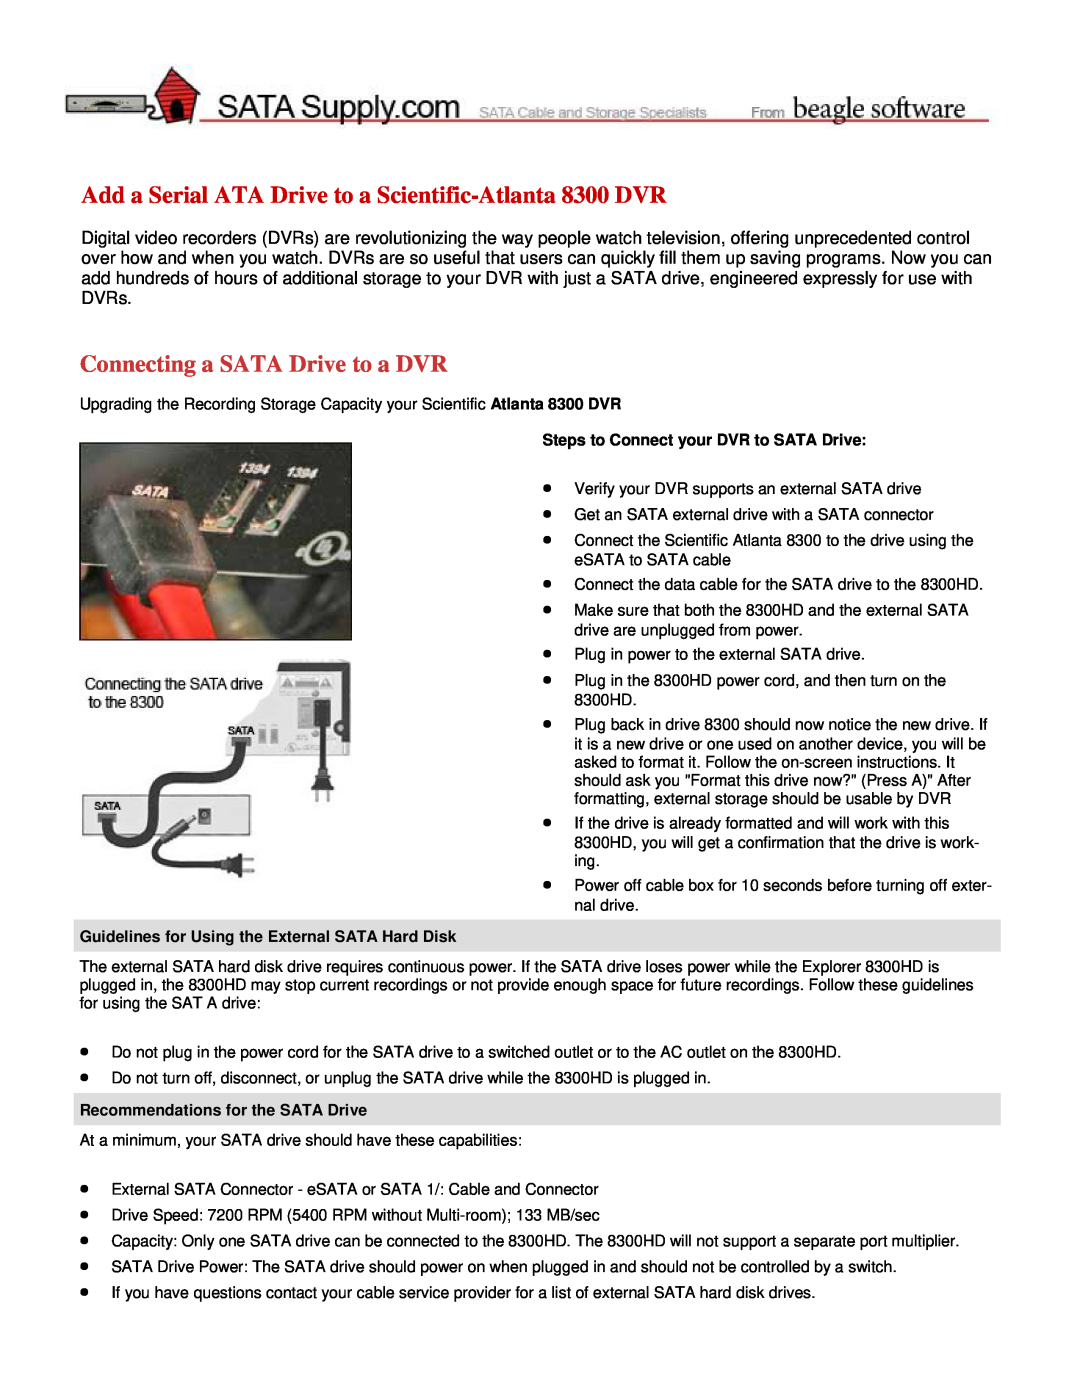 Scientific Atlanta manual Add a Serial ATA Drive to a Scientific-Atlanta 8300 DVR, Recommendations for the SATA Drive 